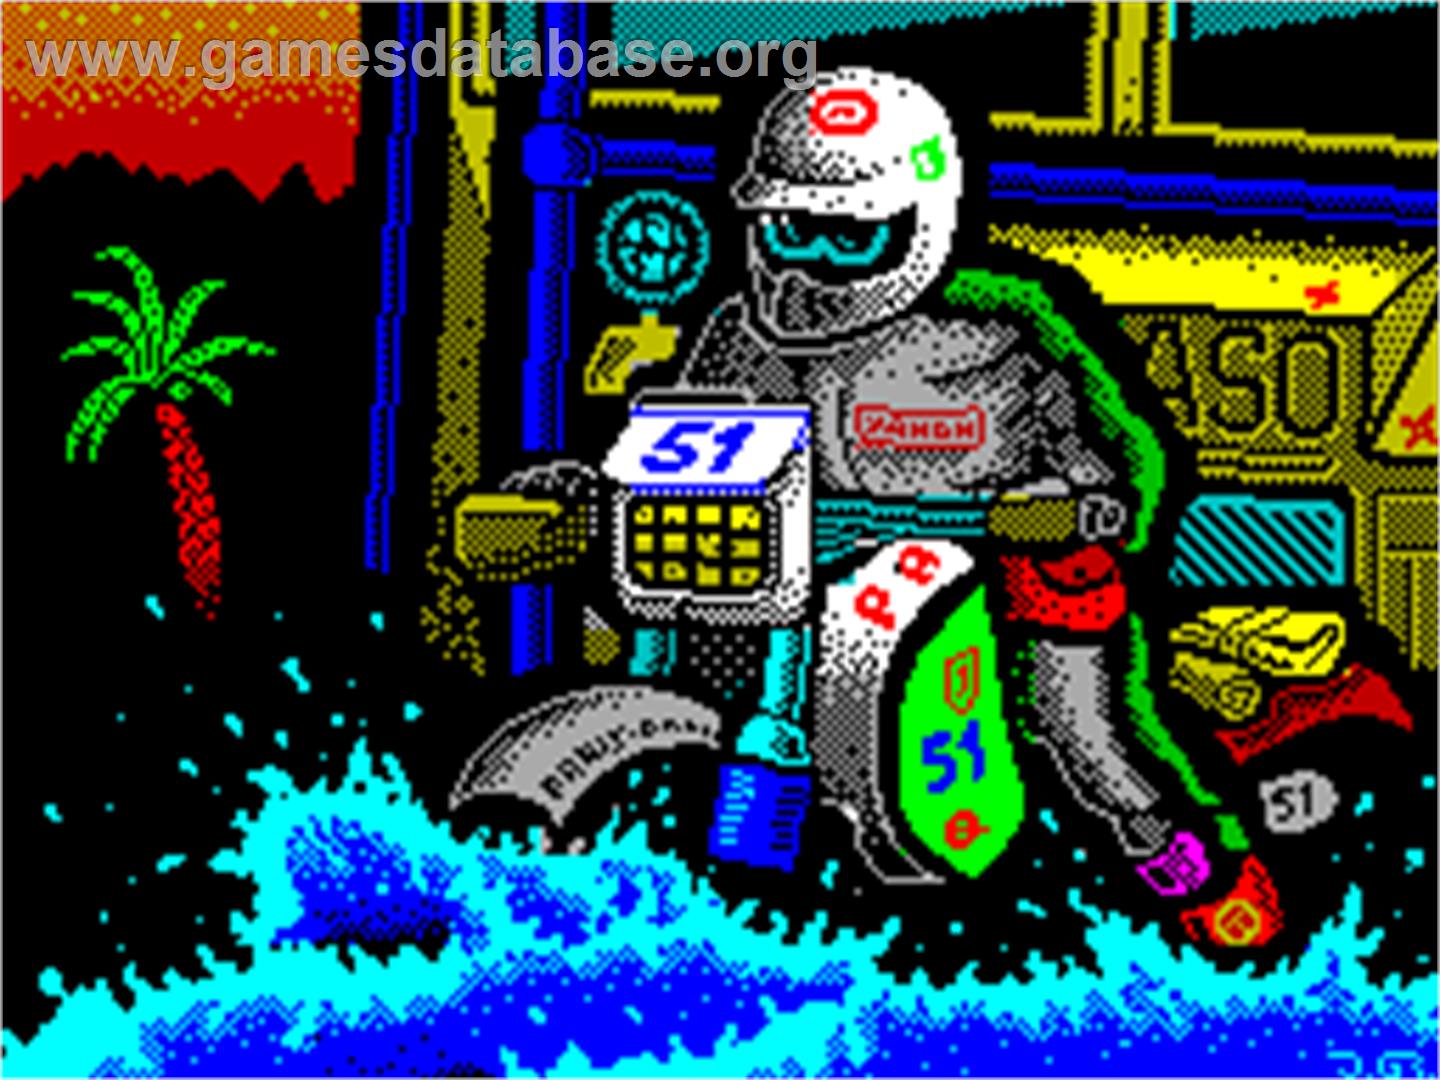 Paris-Dakar - Sinclair ZX Spectrum - Artwork - Title Screen